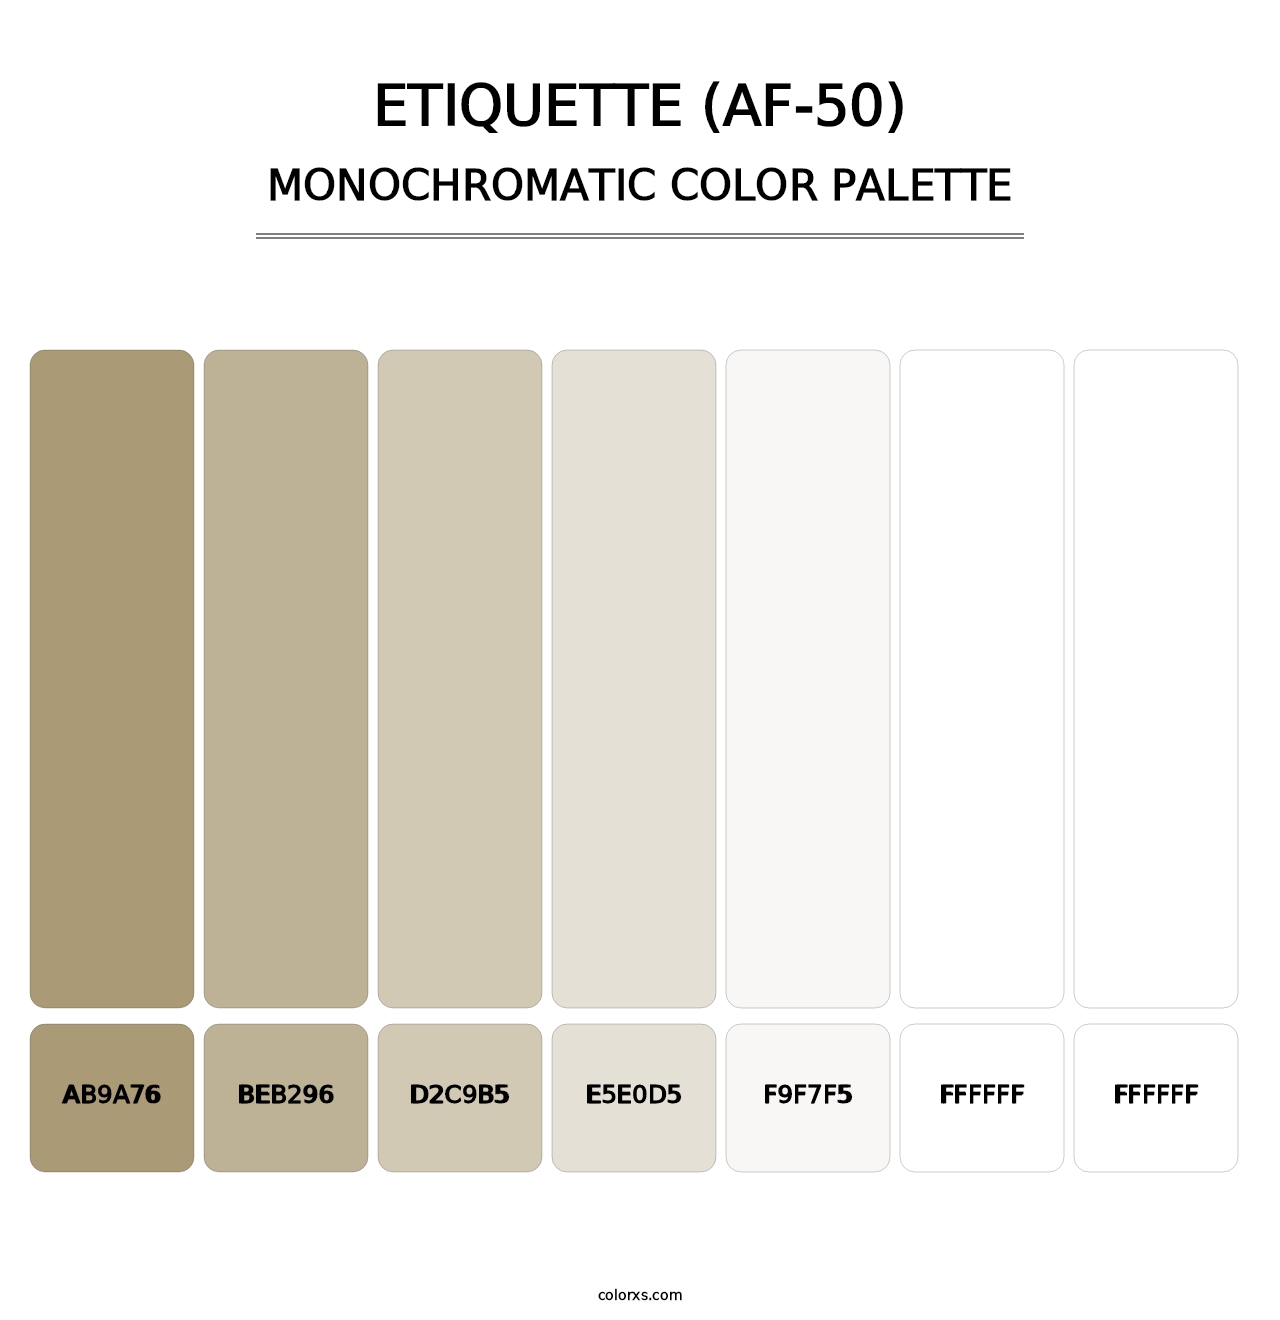 Etiquette (AF-50) - Monochromatic Color Palette